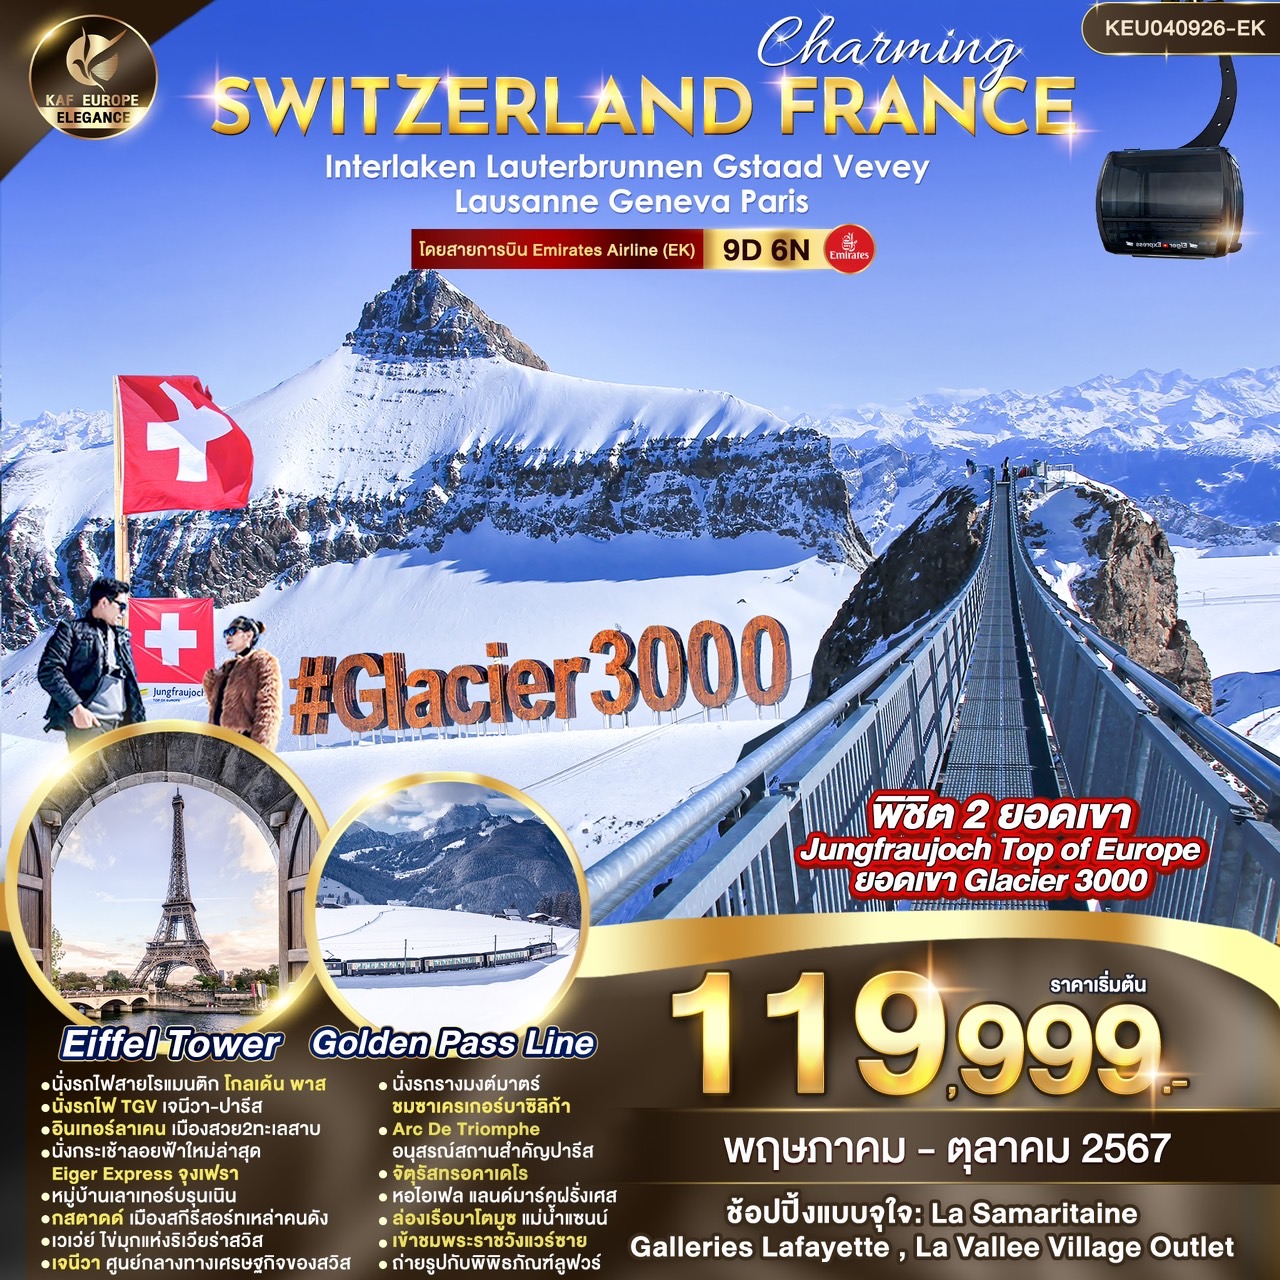 ทัวร์สวิตเซอร์แลนด์ ฝรั่งเศส CHARMING SWITZERLAND FRANCE 9วัน 6คืน (EK)